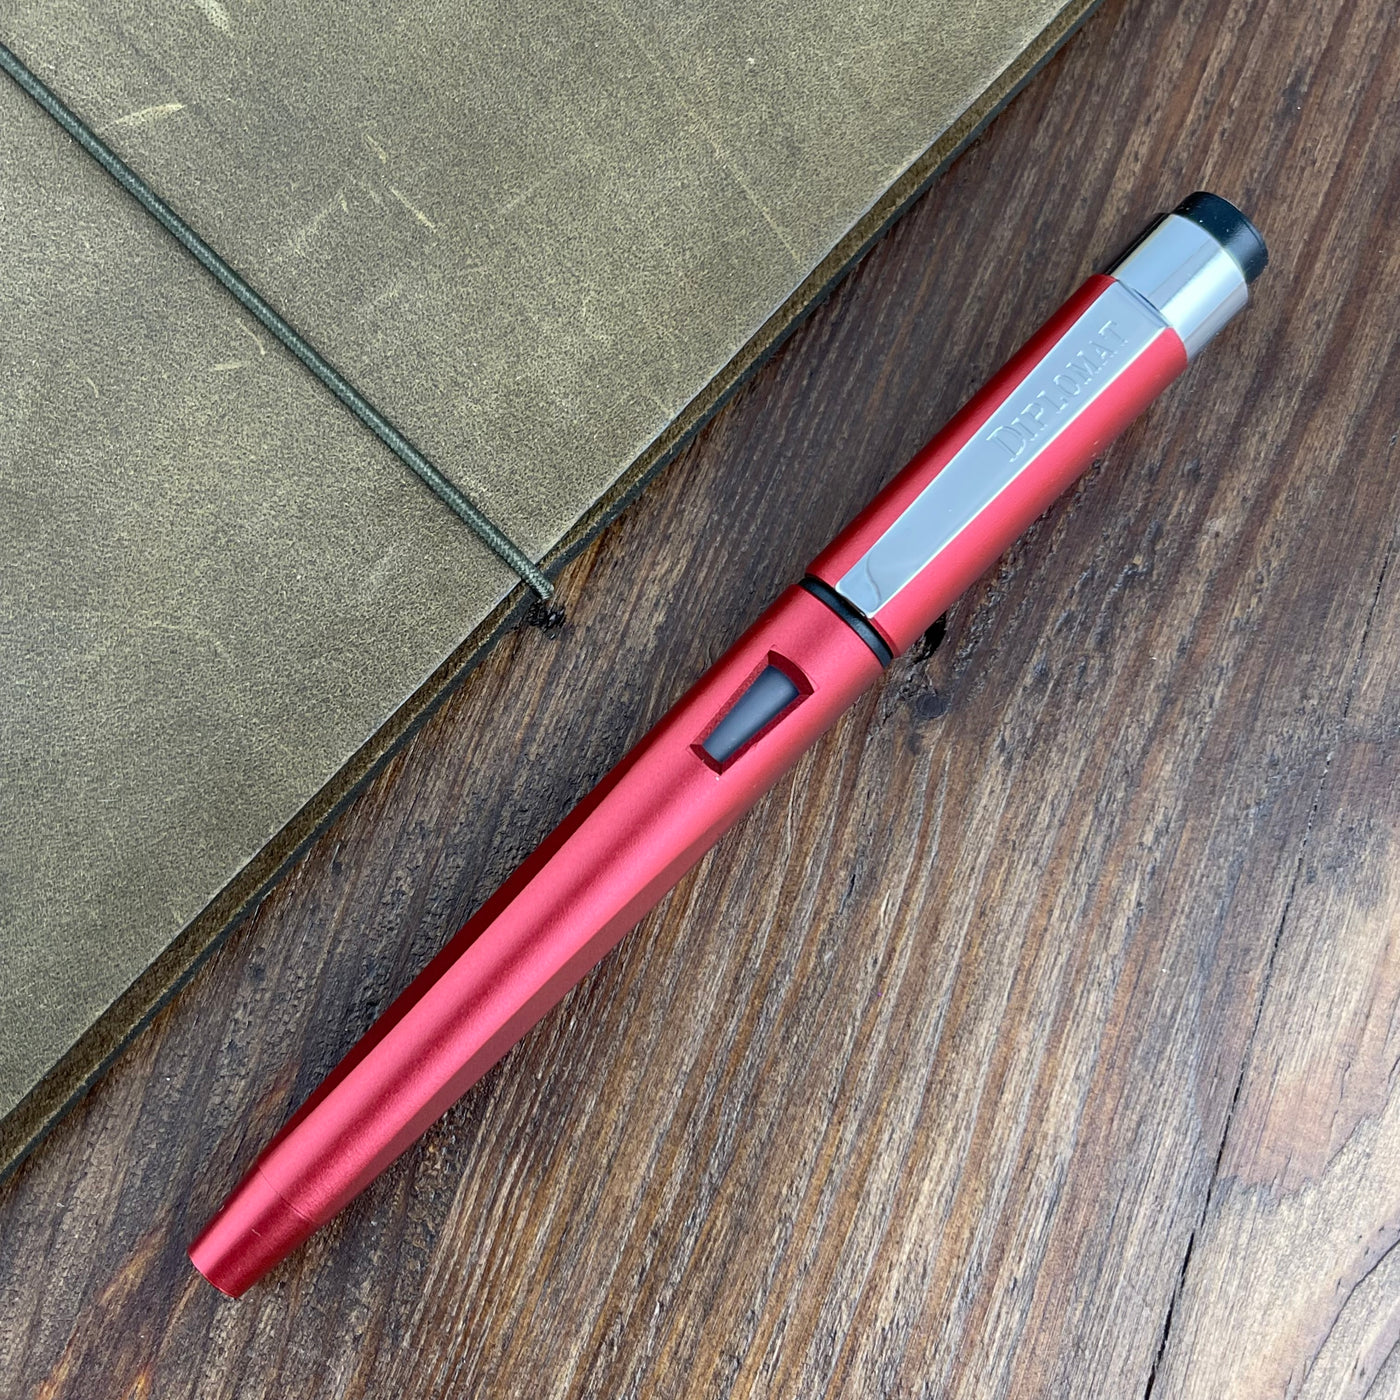 Diplomat Magnum Fountain Pen - Burned Red